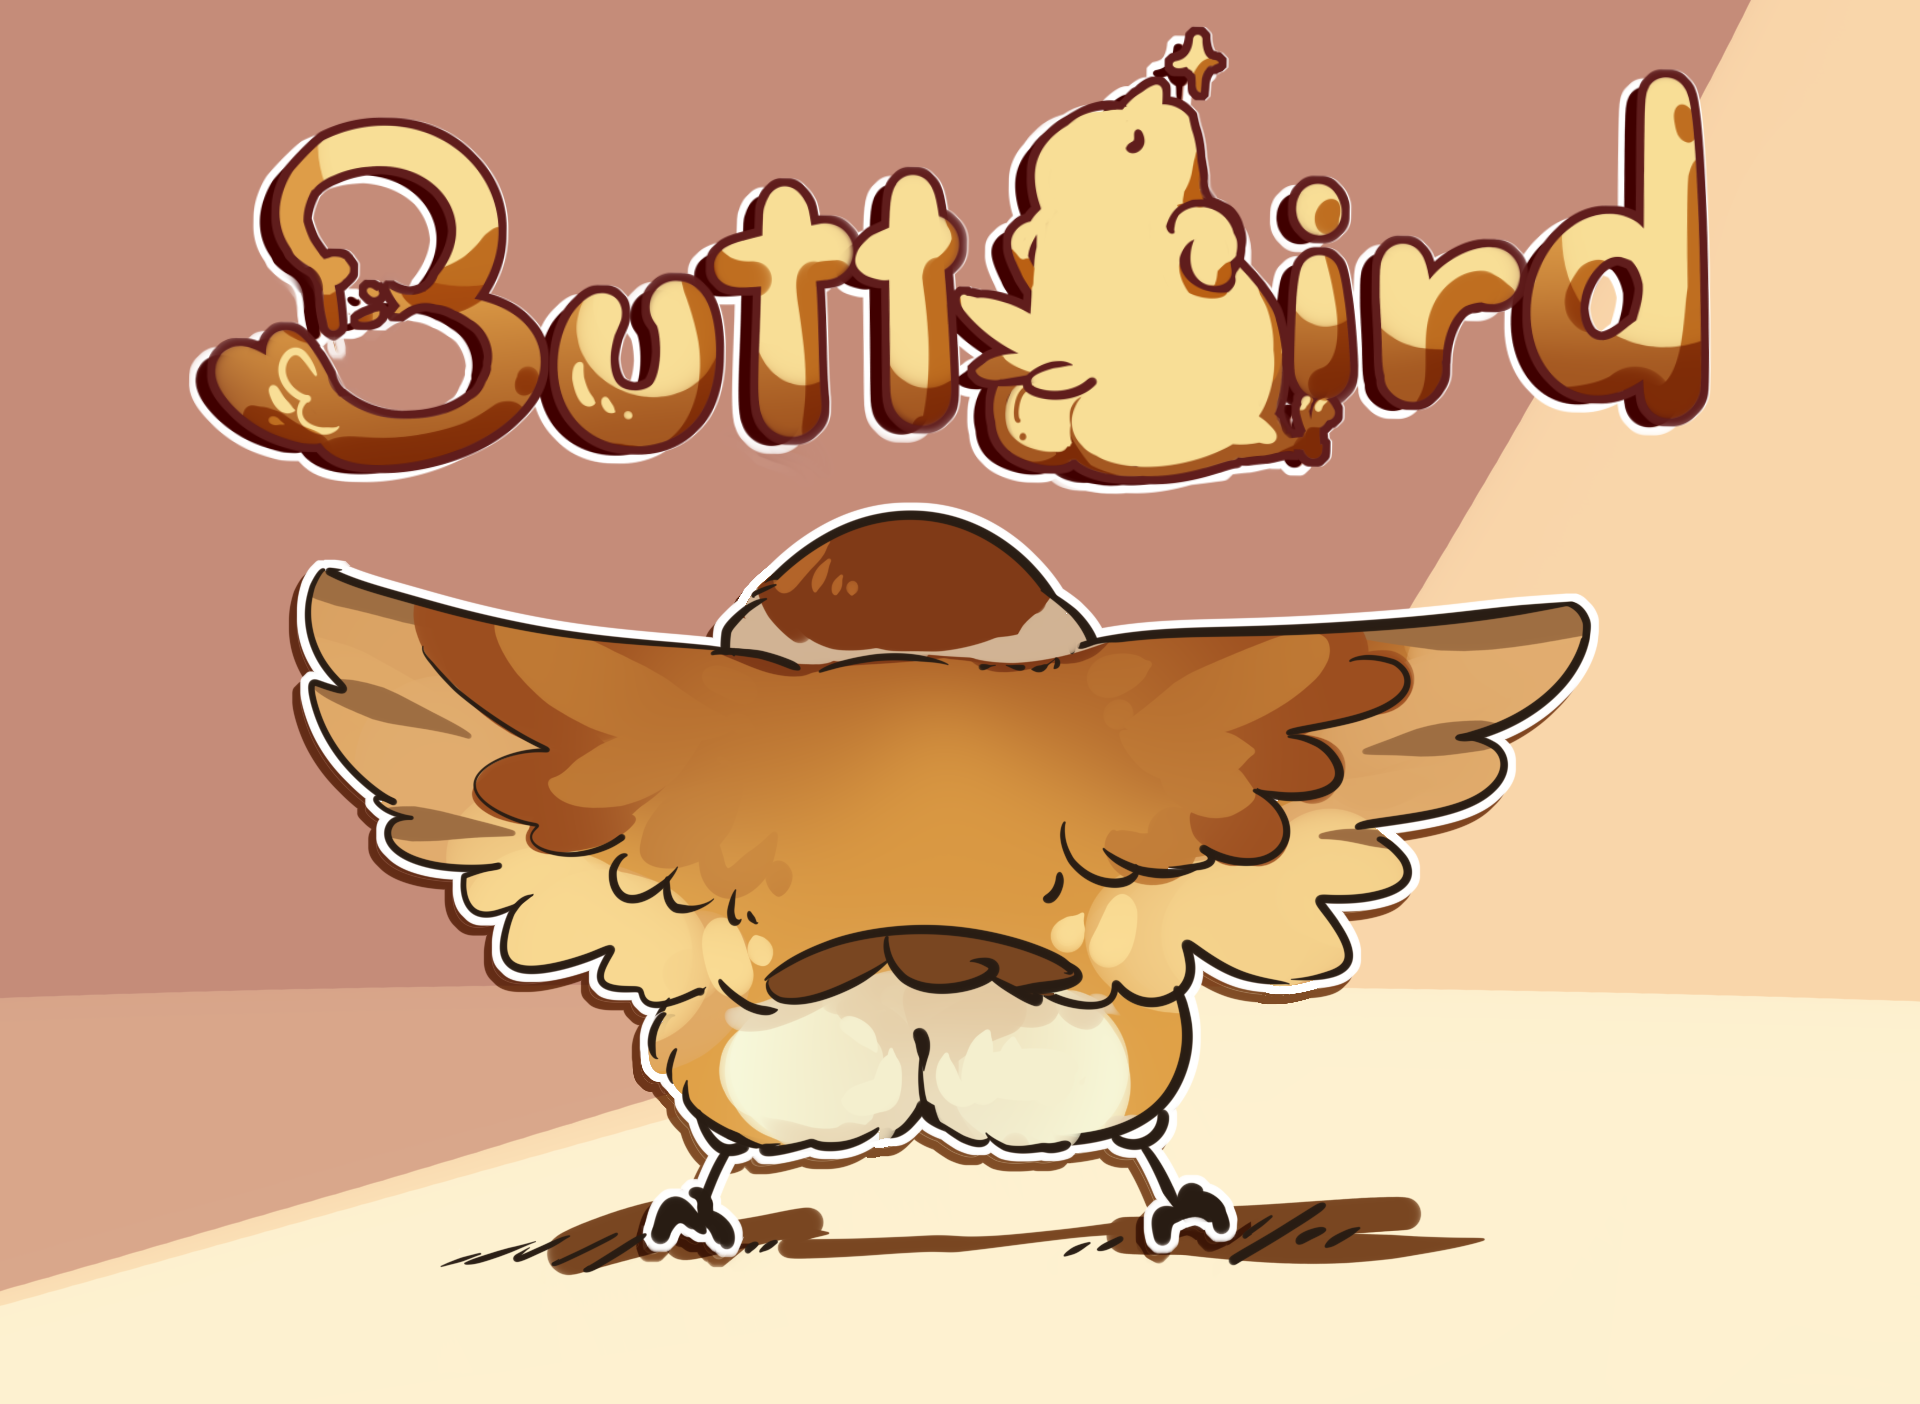 ButtBird